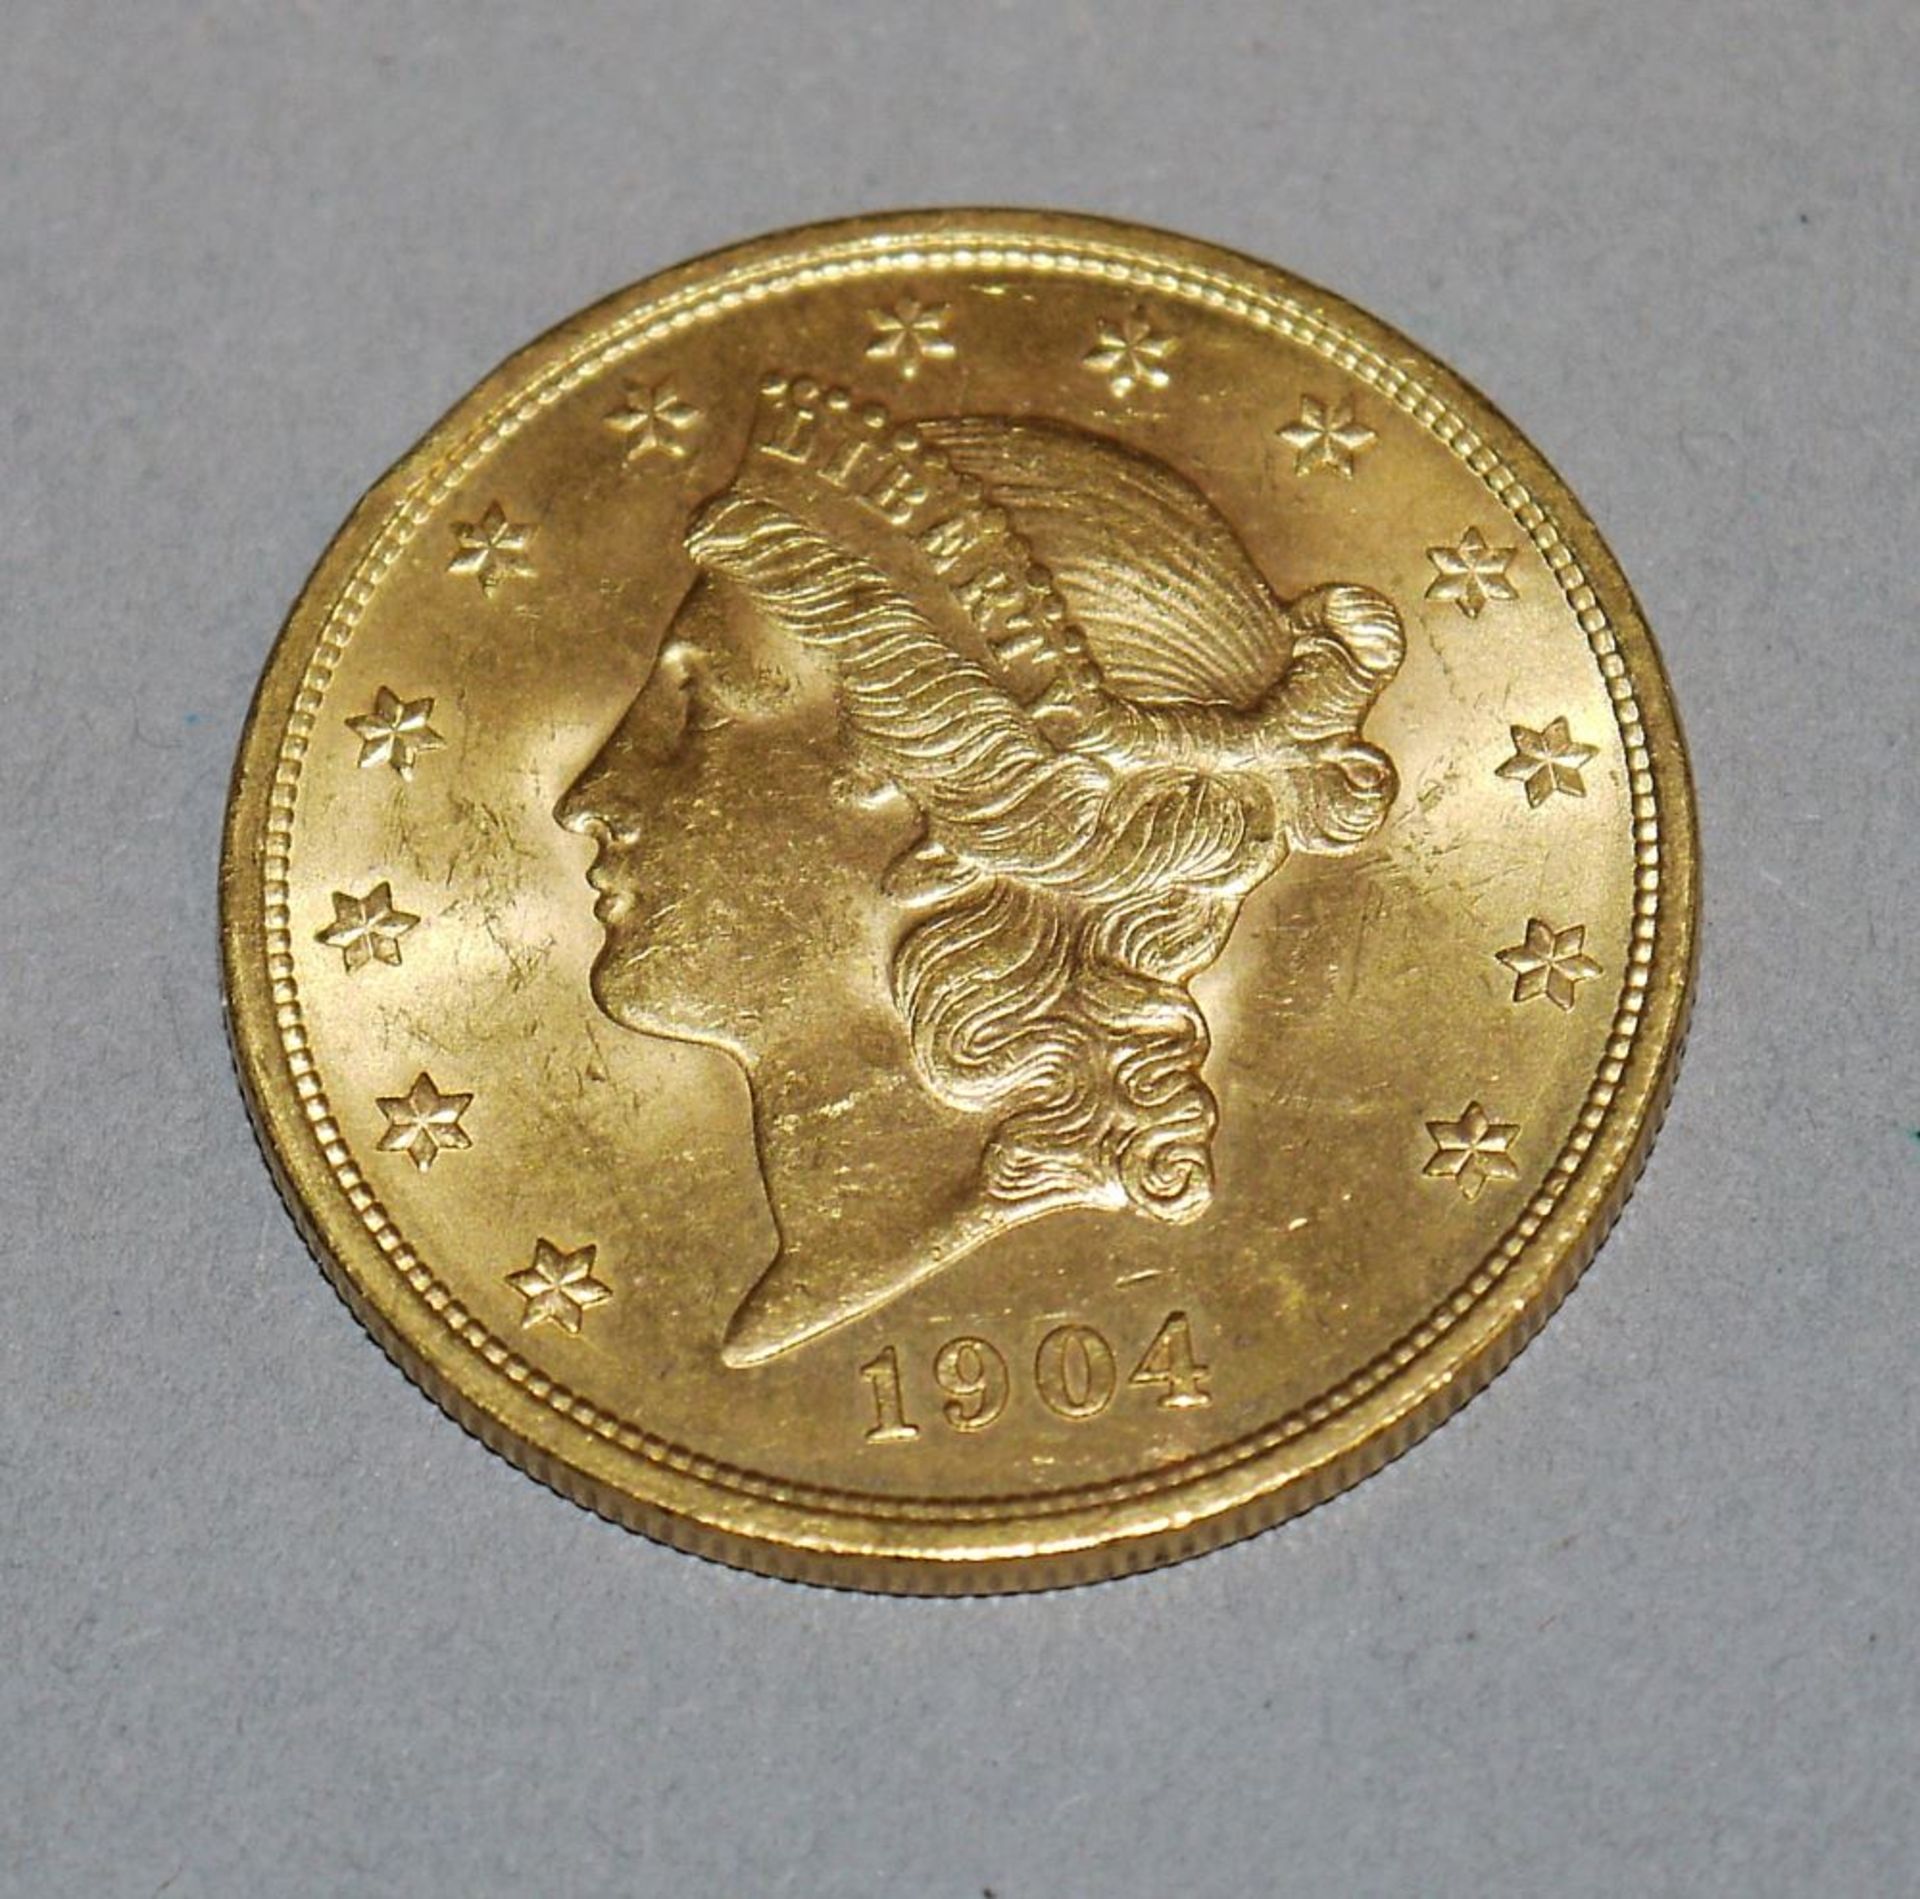 Goldmünze 20 Dollar USA 1904